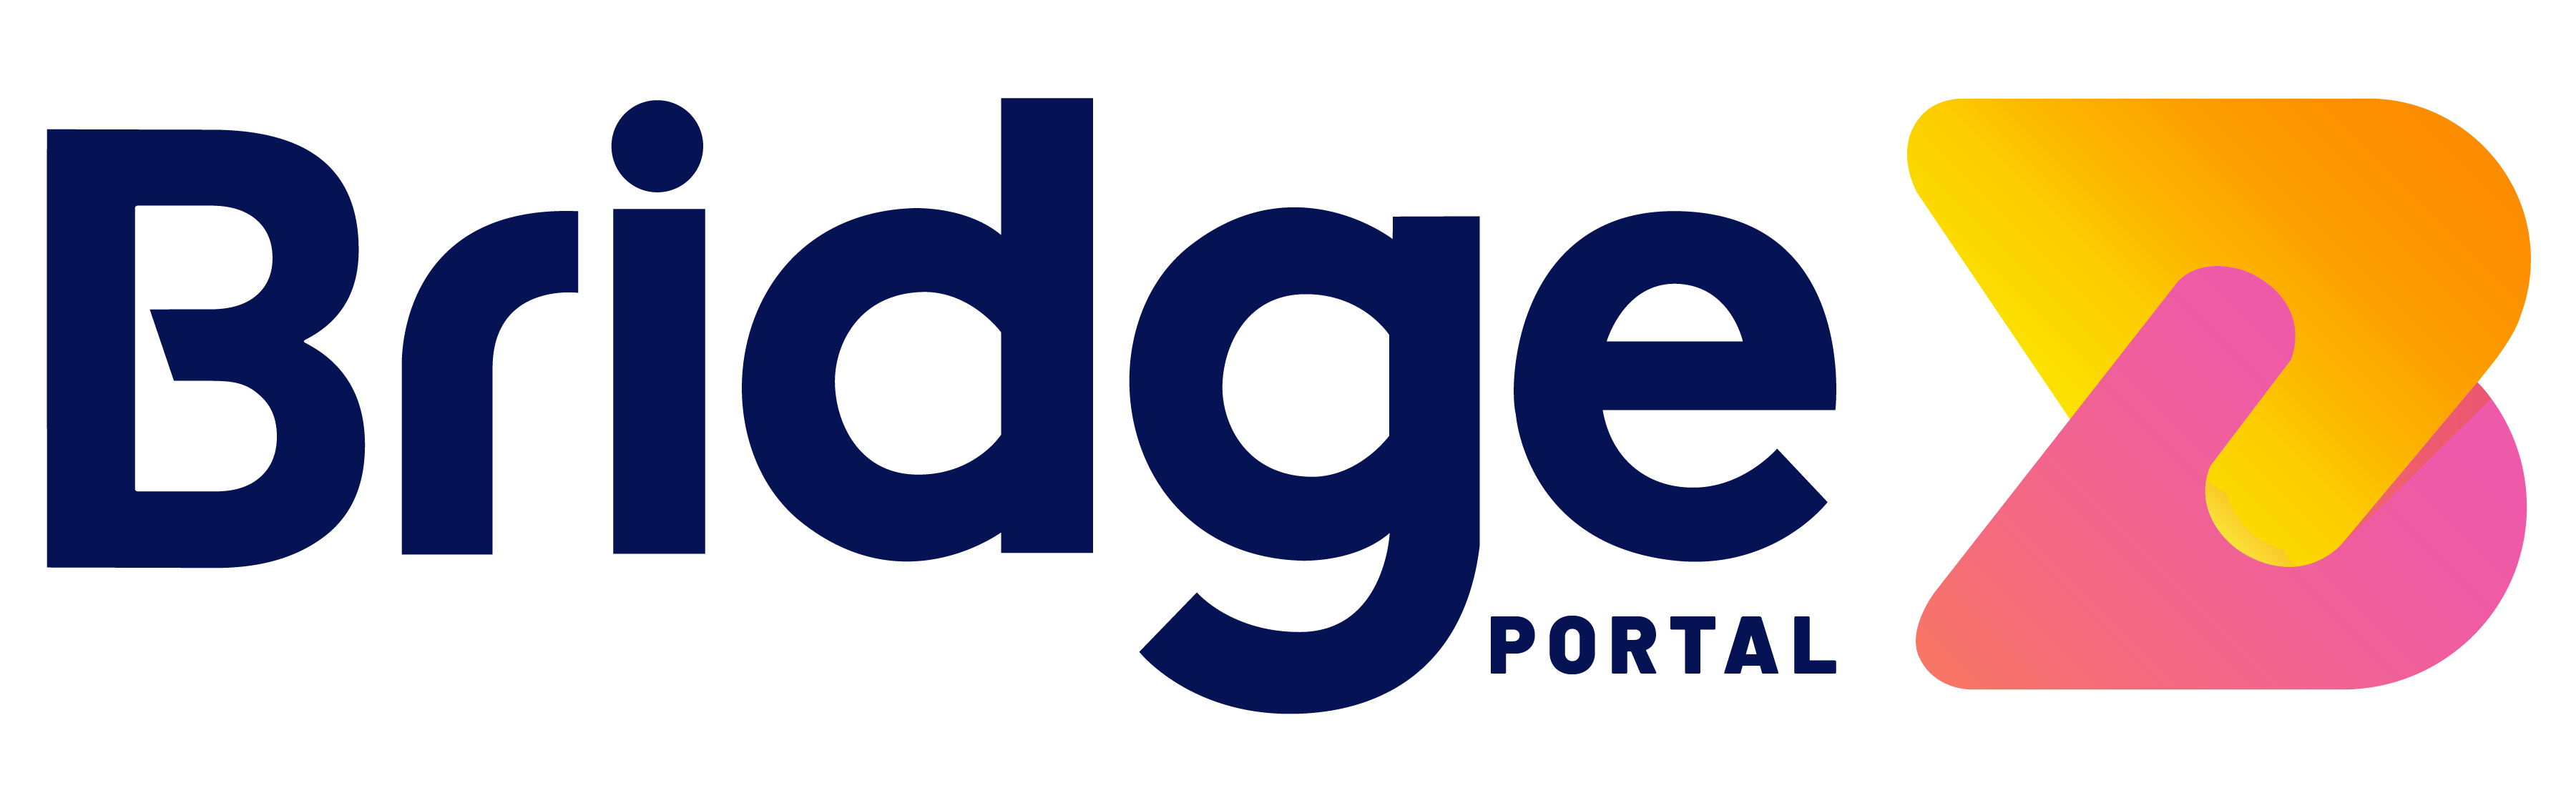 Bridge portal logo